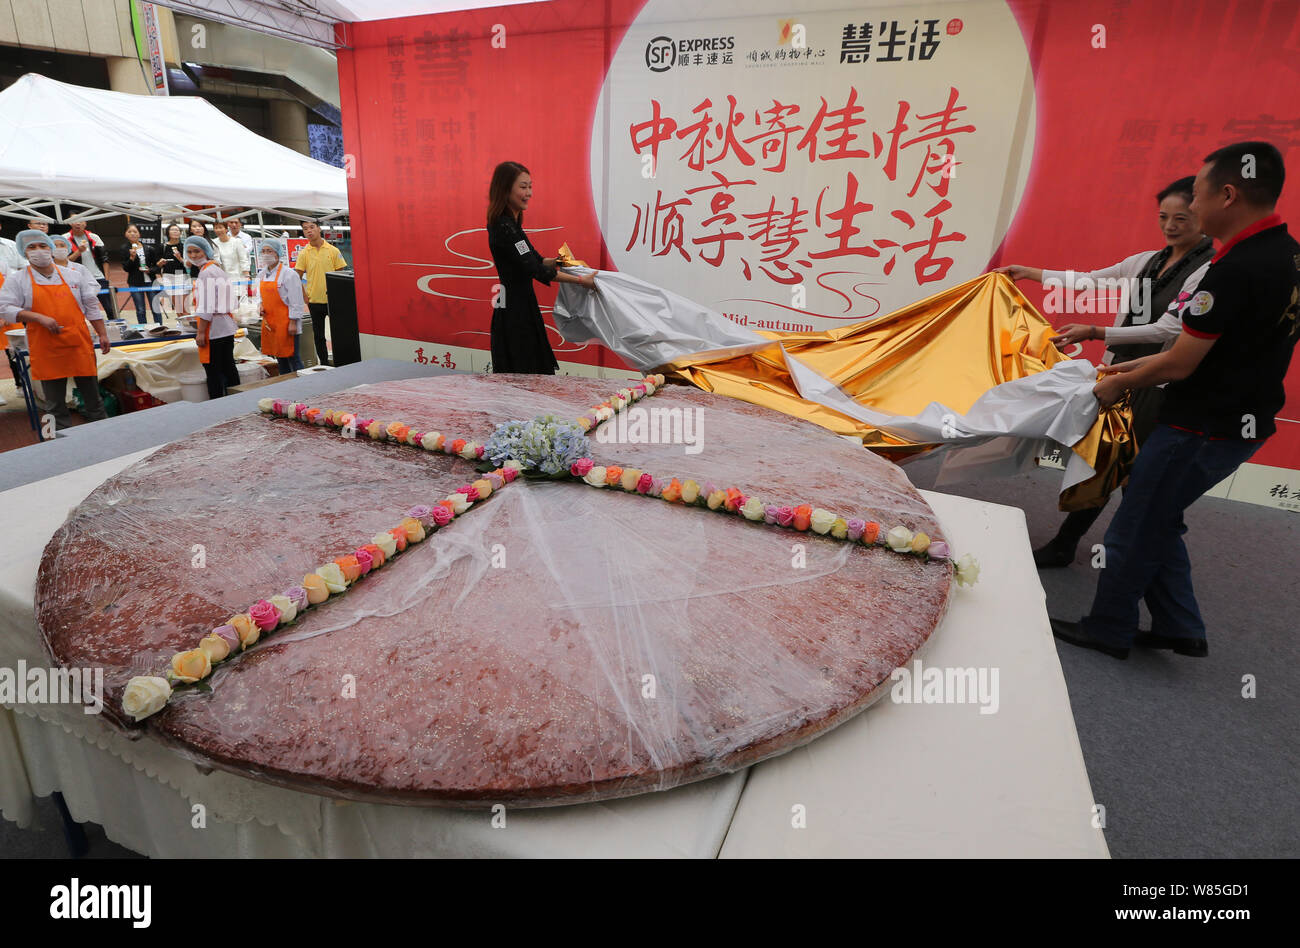 Los empleados de una empresa local de alimentos develar el mooncake gigante con un diámetro de 2,4 metros durante un evento promocional para la próxima Mid-Autumn Fes Foto de stock